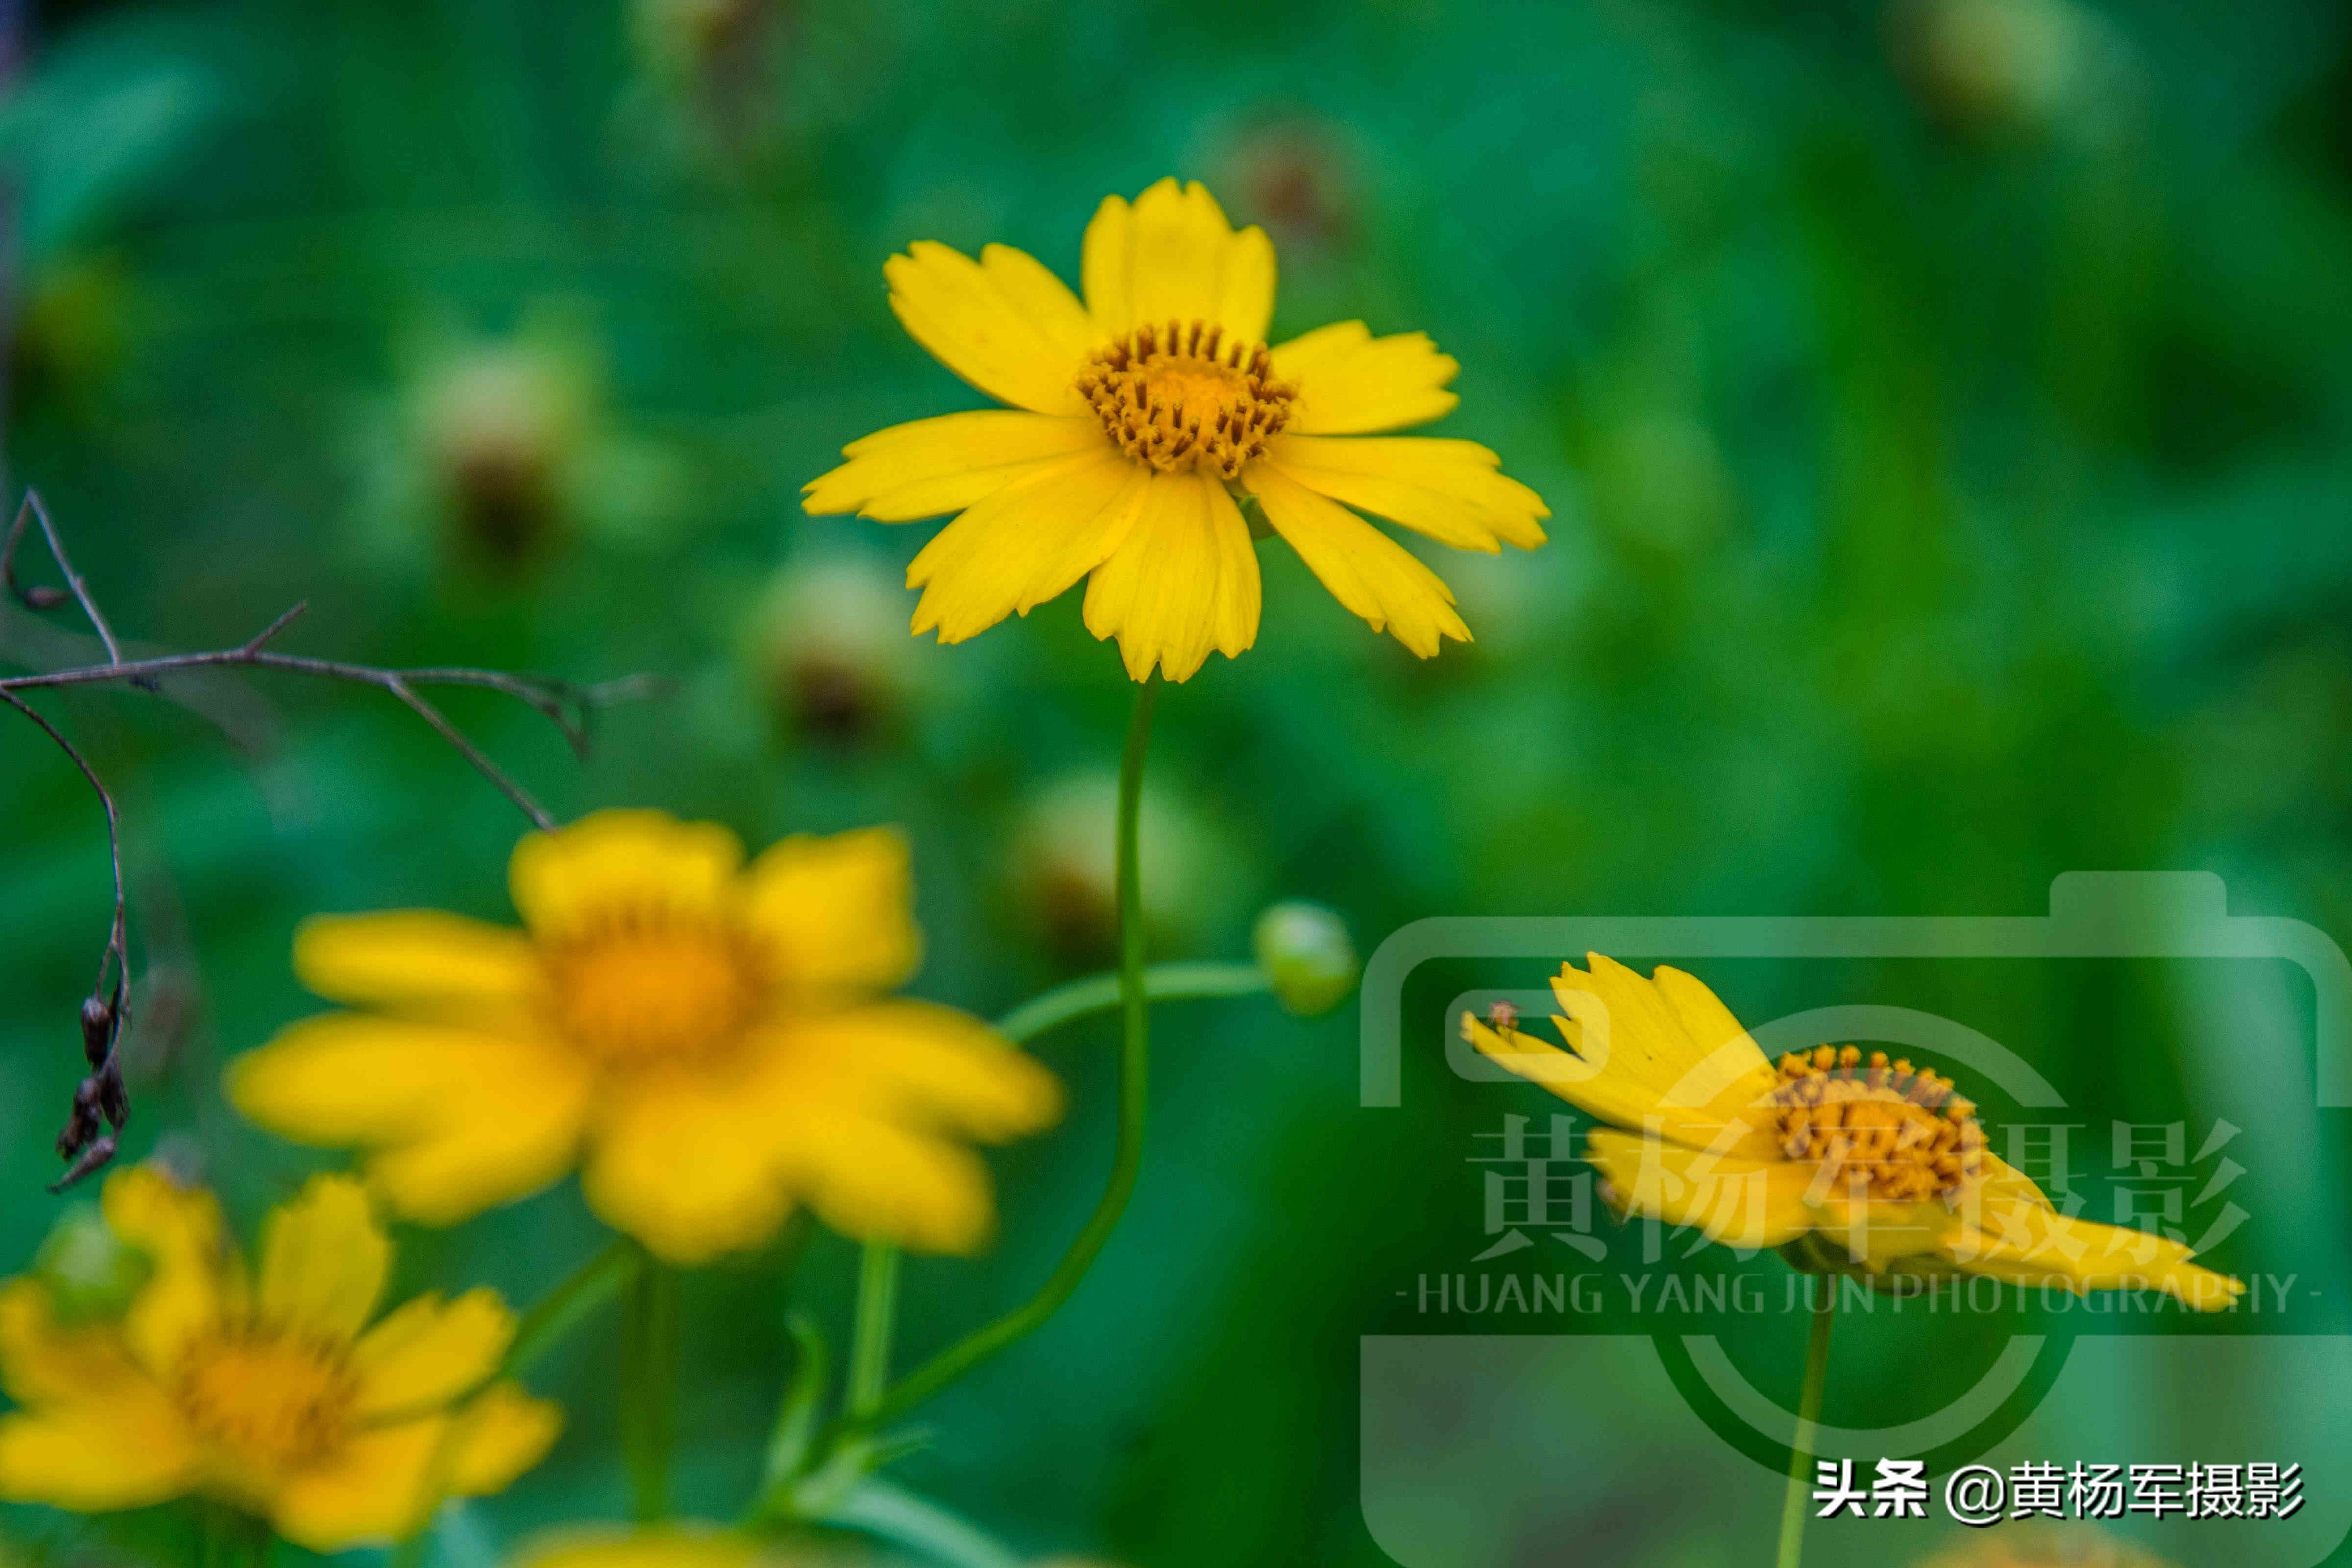 夏日盛开美如画的金鸡菊 金黄的花朵惹人爱 花繁叶茂的菊科植物 资讯咖